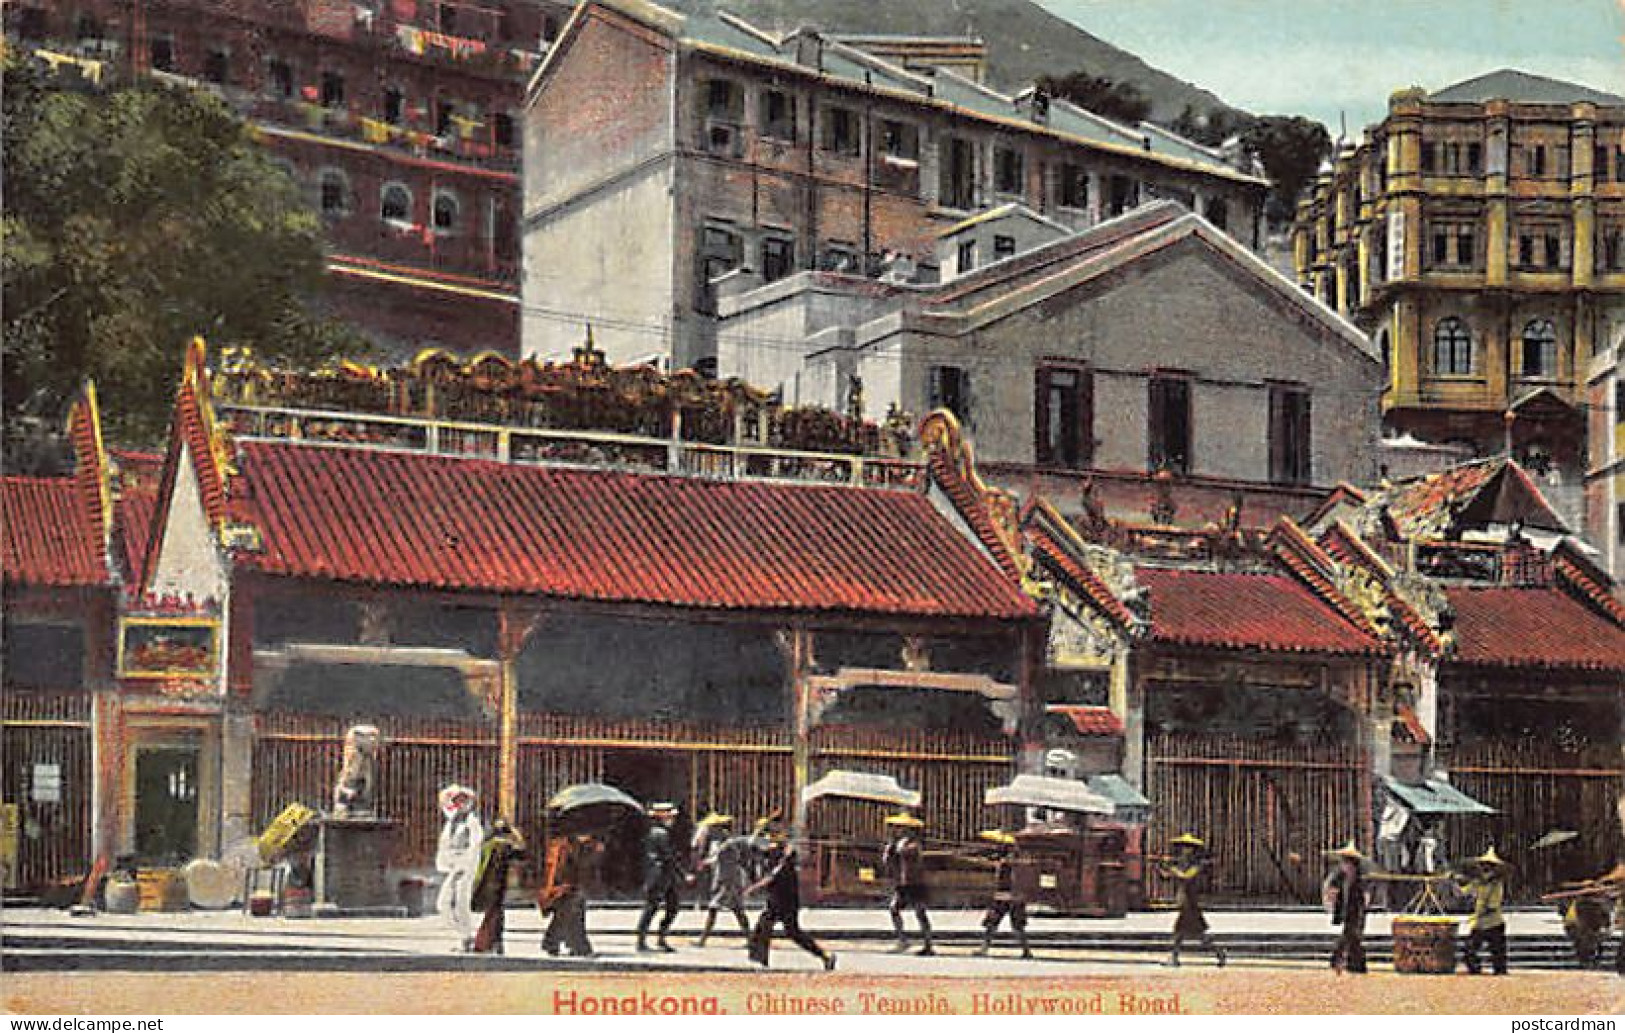 China - HONG KONG - Chinese Temple, Hollywood Road - Publ. Turco-Egyptian Tobacco Store  - China (Hong Kong)